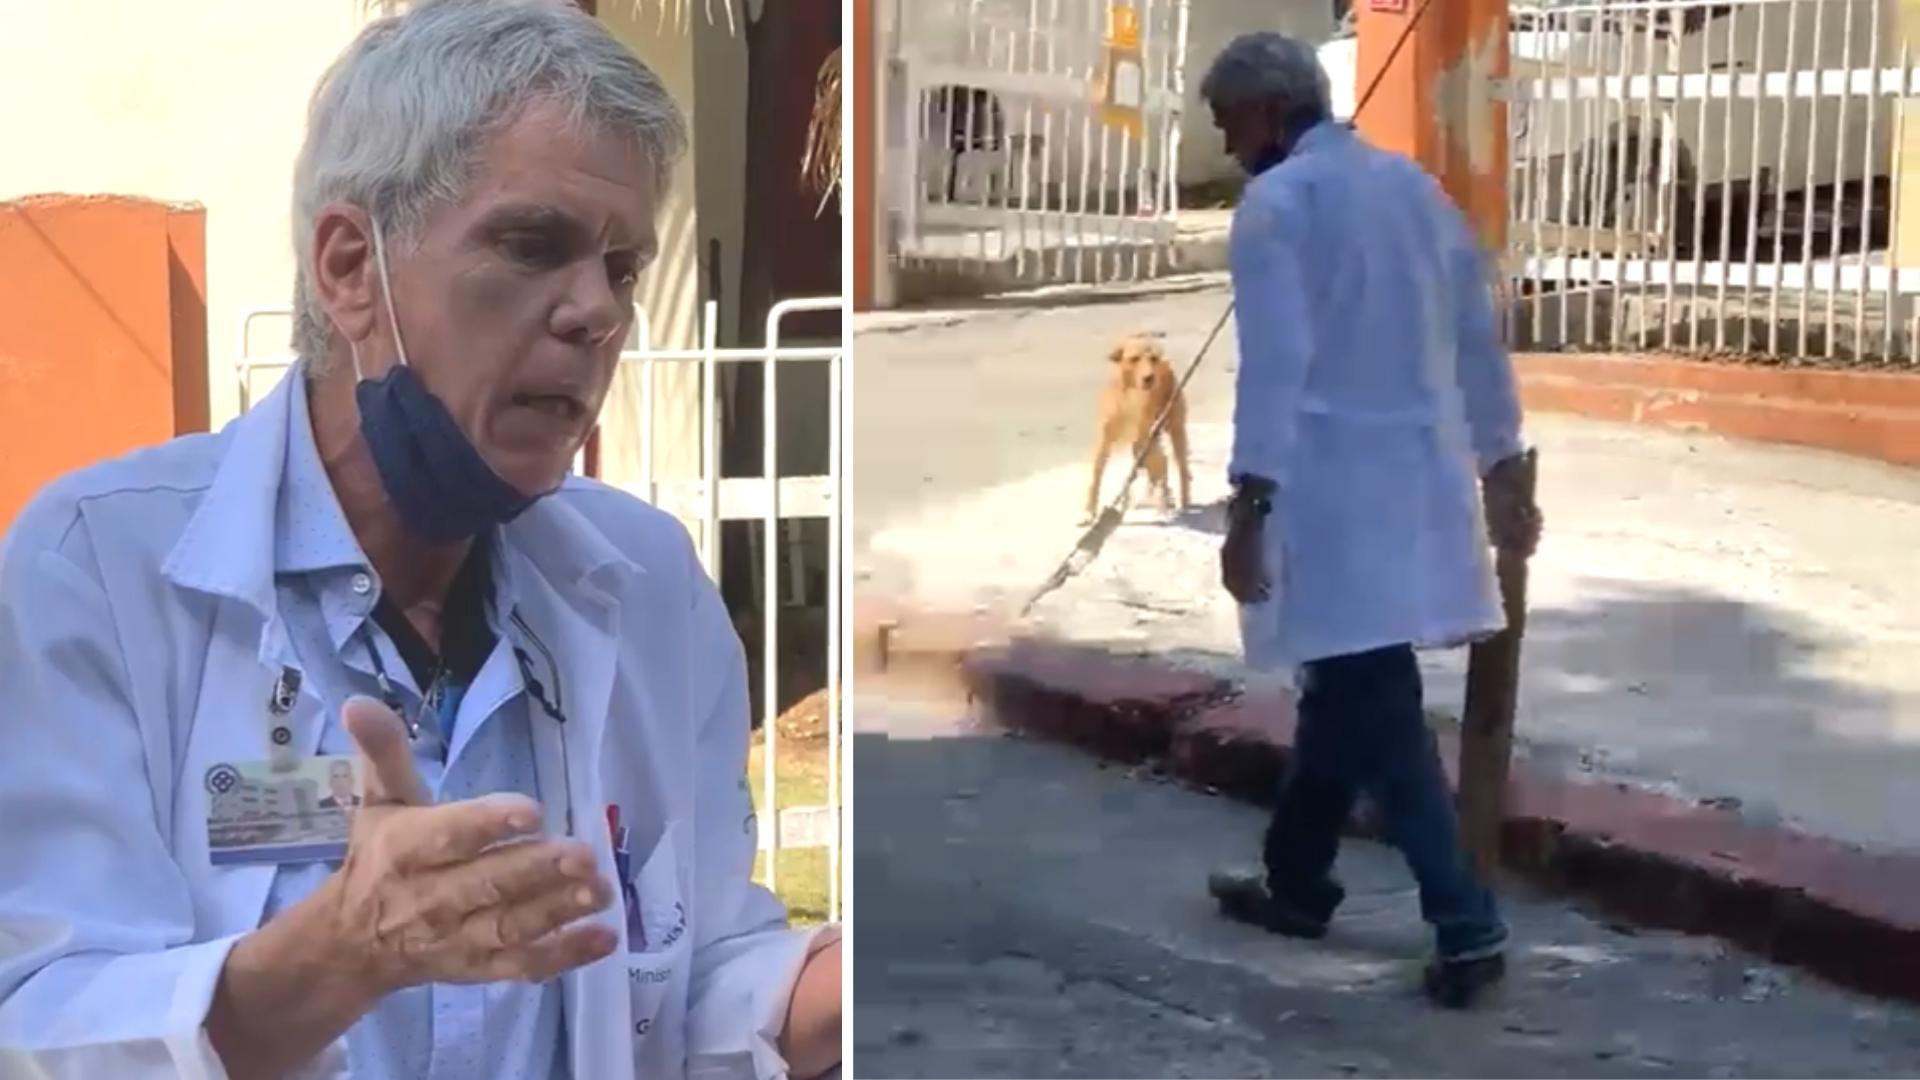 Palmero Álvarez dejó a la mascota “inconsciente” en el piso, según denunciaron animalistas en redes sociales